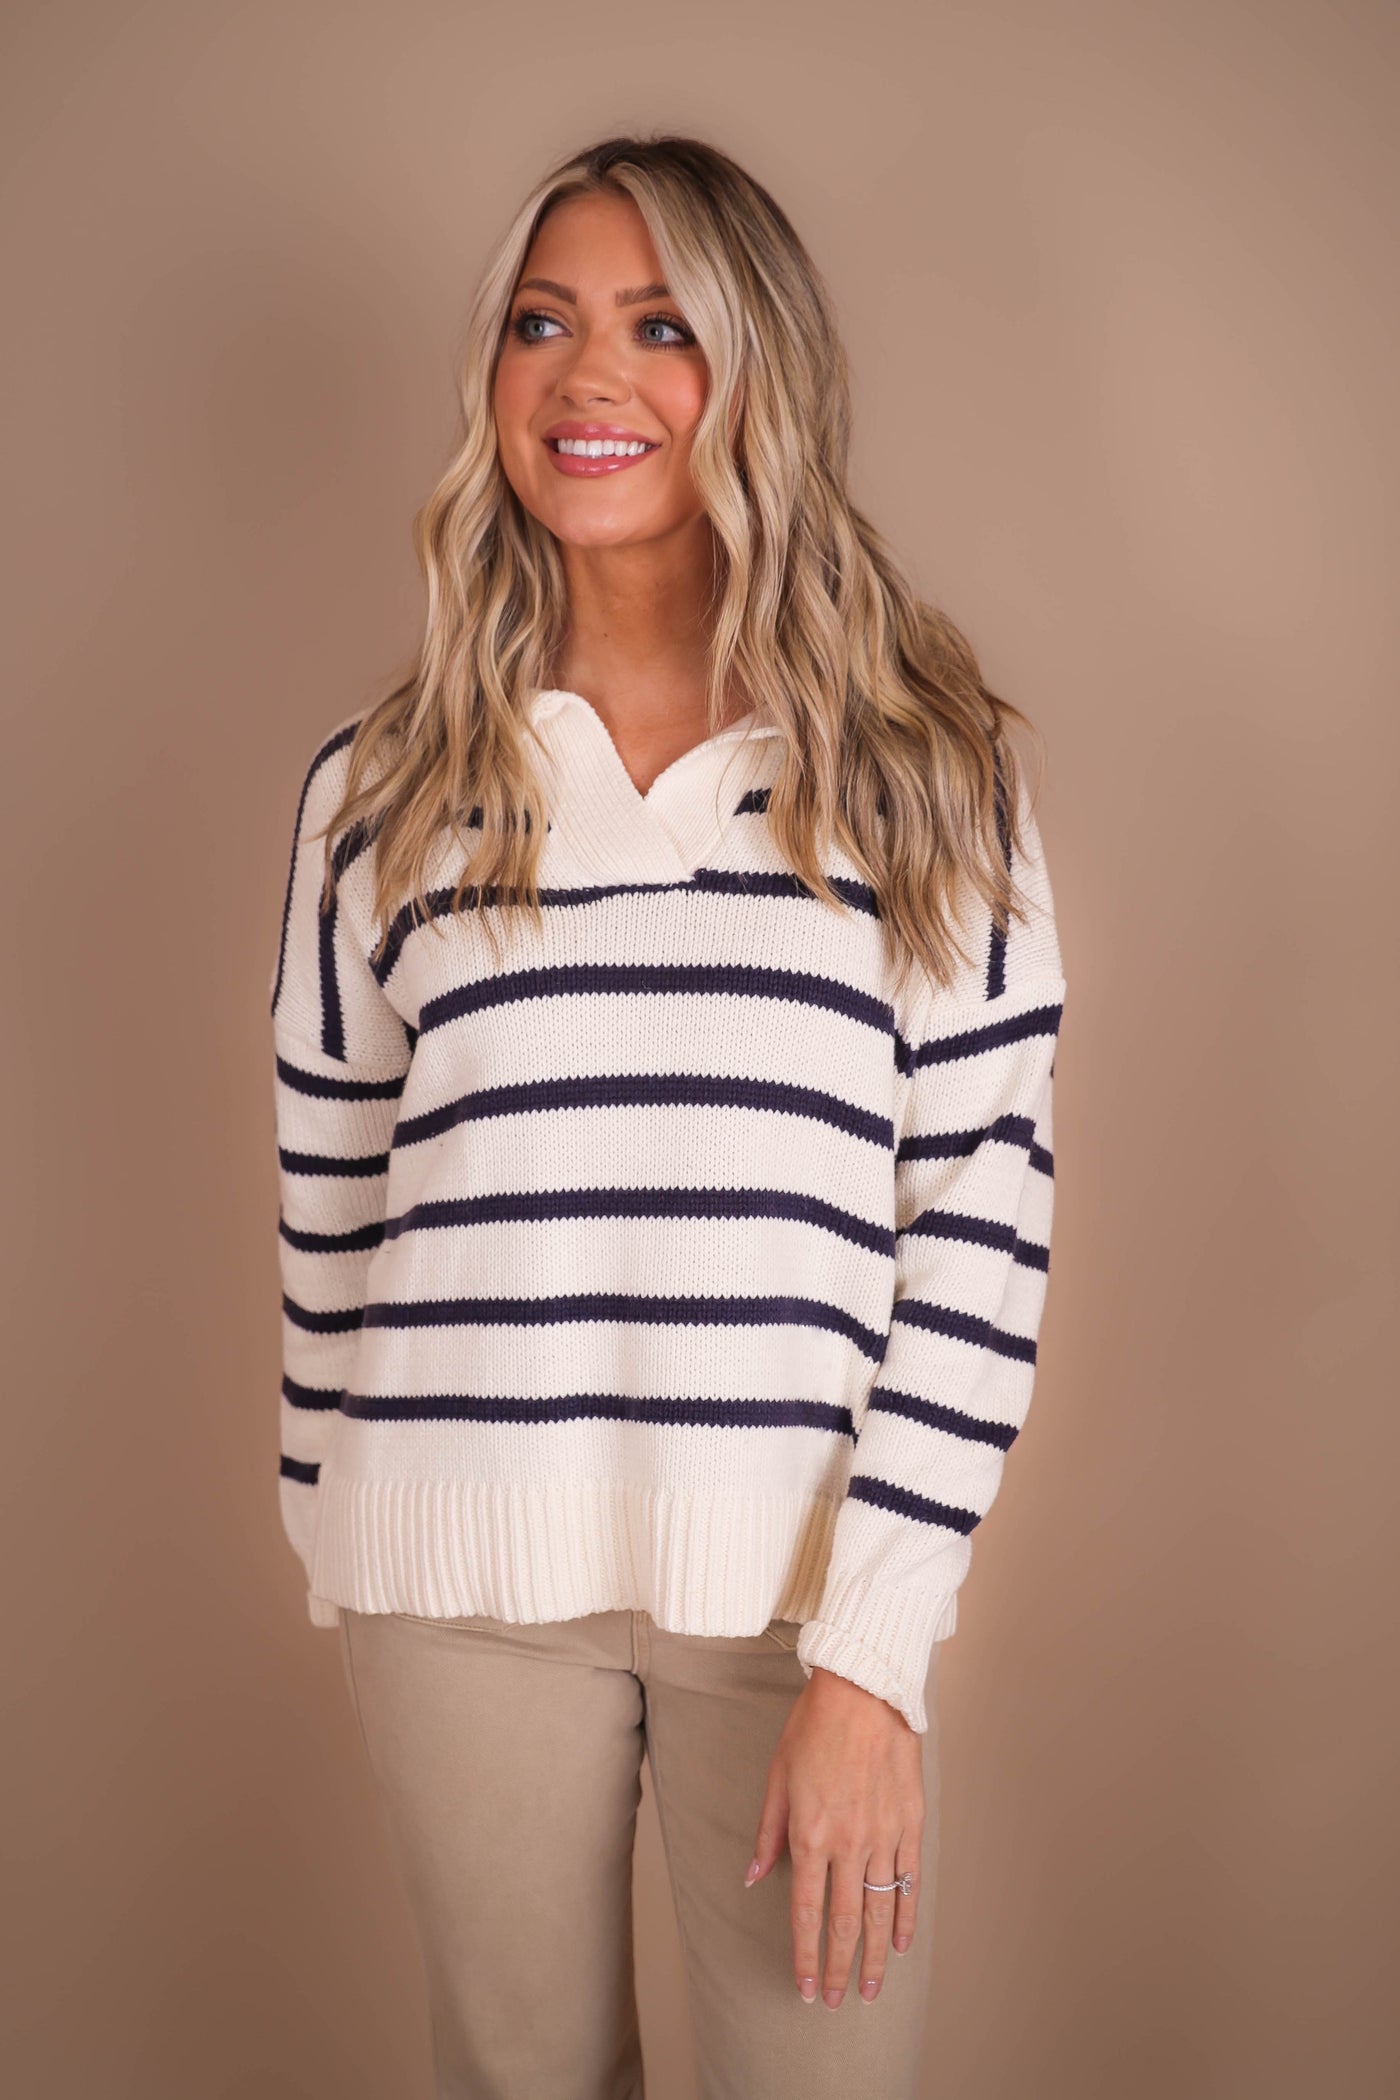 Women's Classic Stripe Sweater- Women's Striped Collar Sweater- Women's Preppy Sweaters